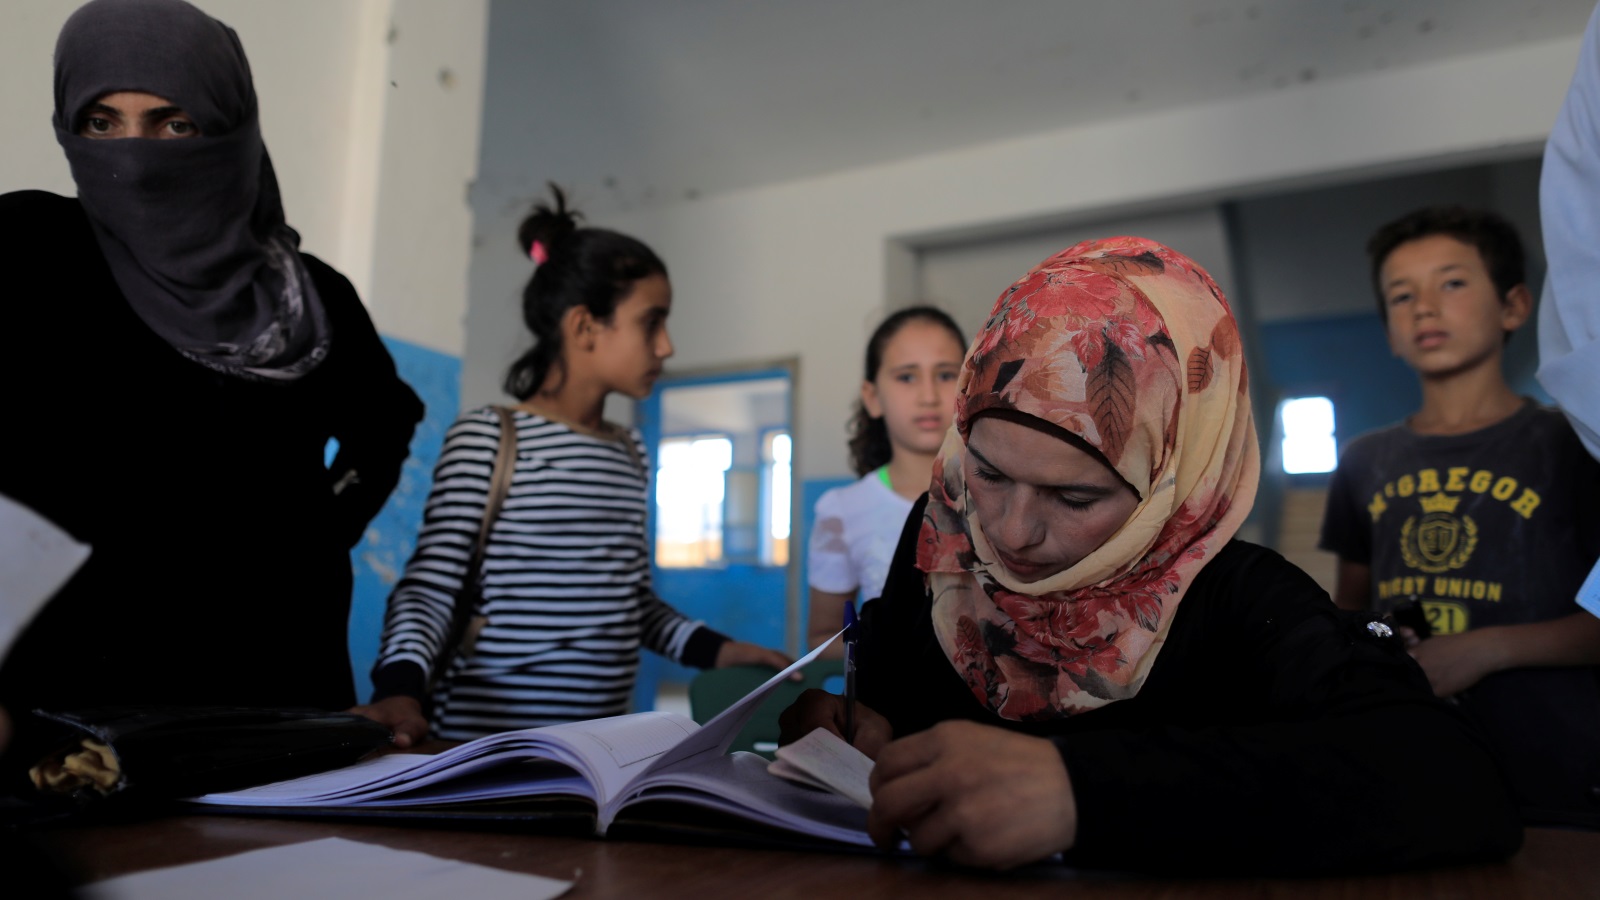 أطفال الرقة بدؤوا العودة للمدارس بعد سنوات من إجبارهم على التعلم وفق مناهج تنظيم الدولة (رويترز)